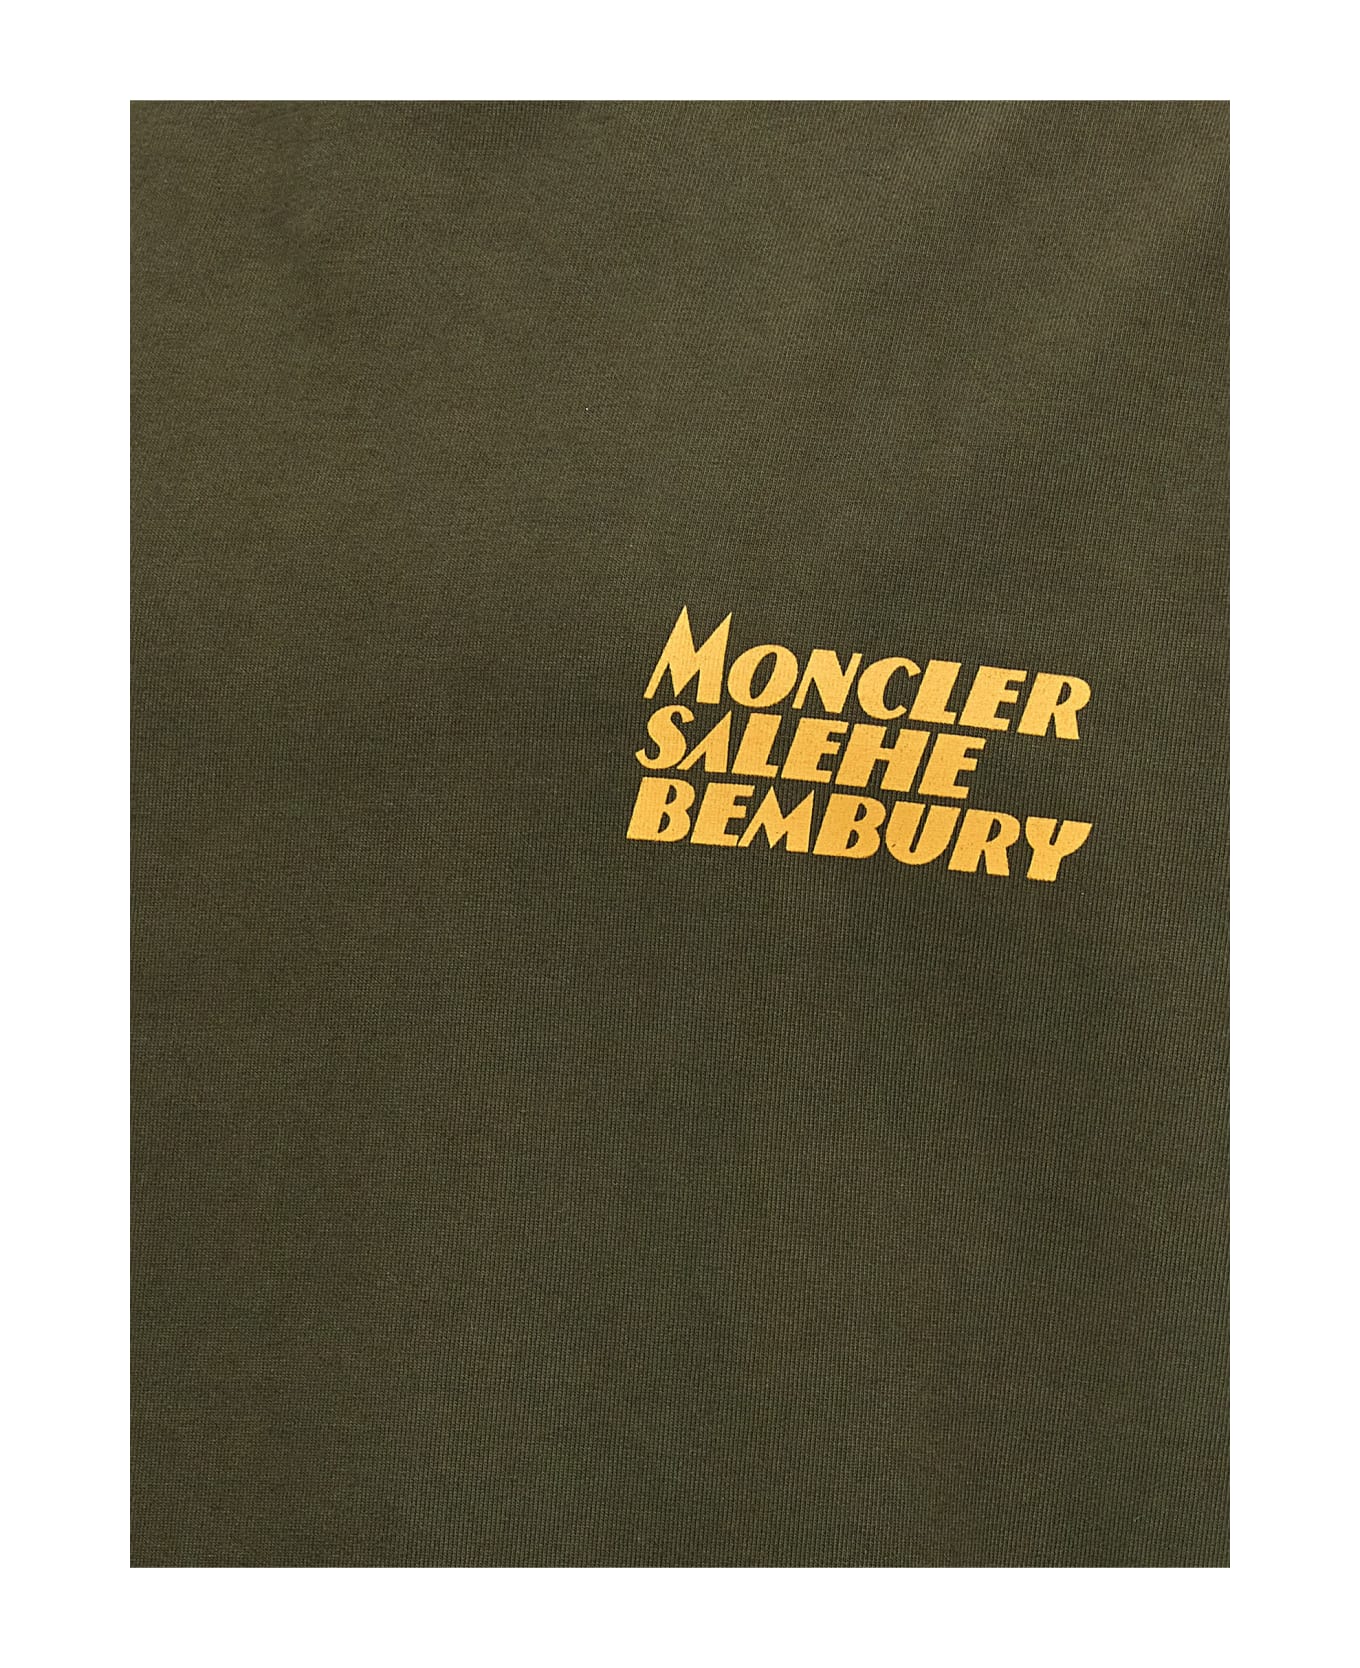 Moncler Genius T-shirt Moncler Genius X Salehe Bembury - Green